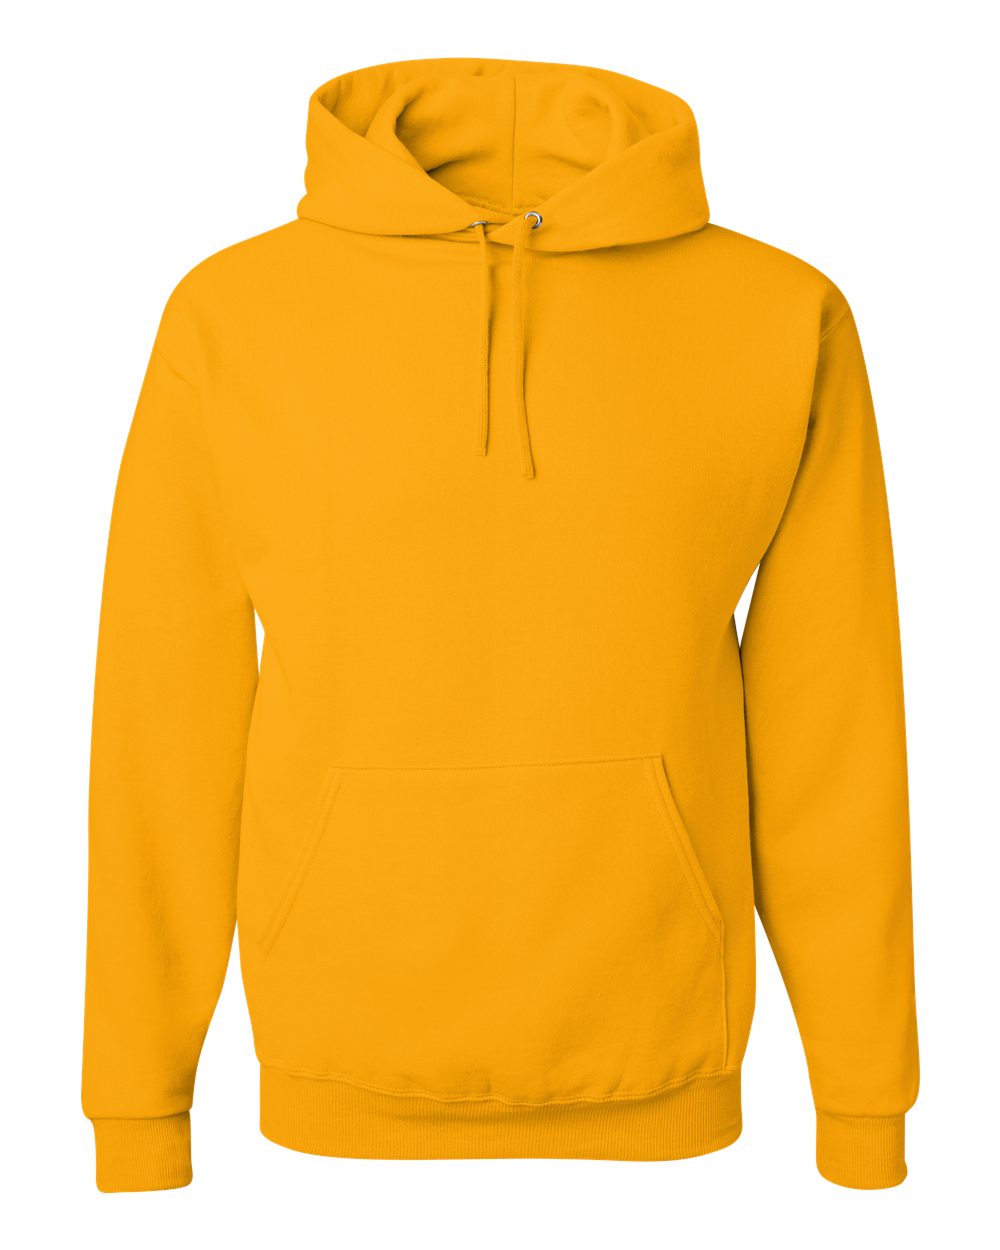 JERZEES&#xAE; NuBlend Hooded Sweatshirt